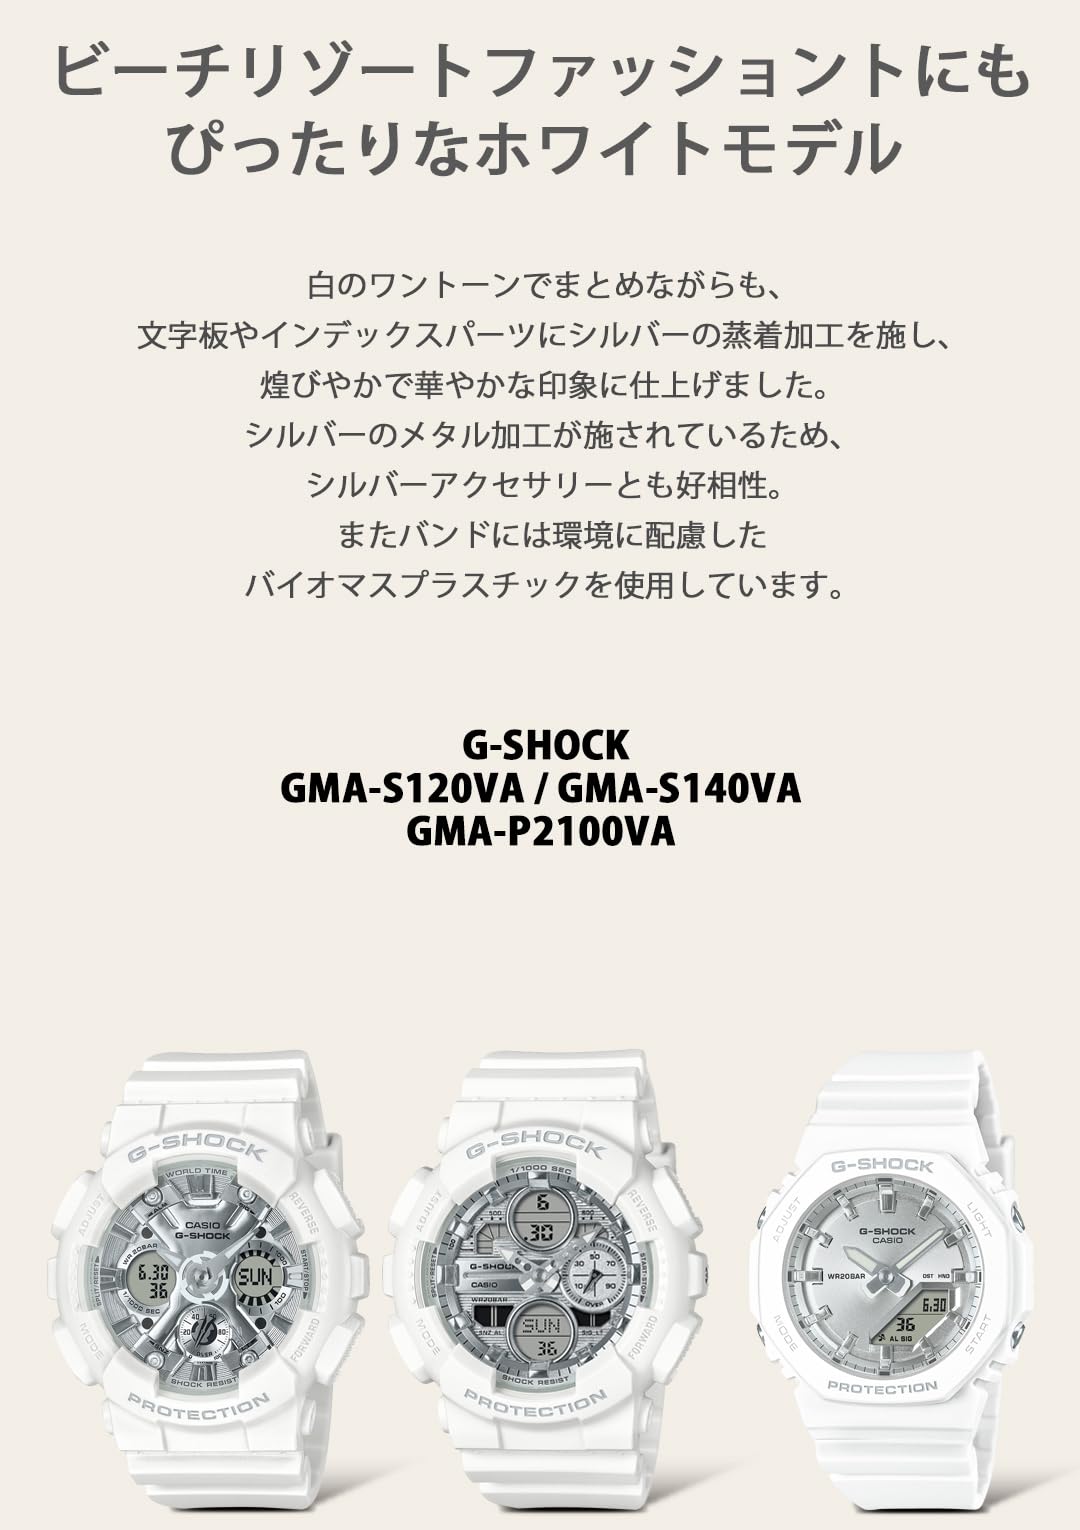 ジーショック [カシオ] 腕時計 【国内正規品】バイオマスプラスチック採用 GMA-S120VA-7AJF レディース ホワイト - BanzaiHobby